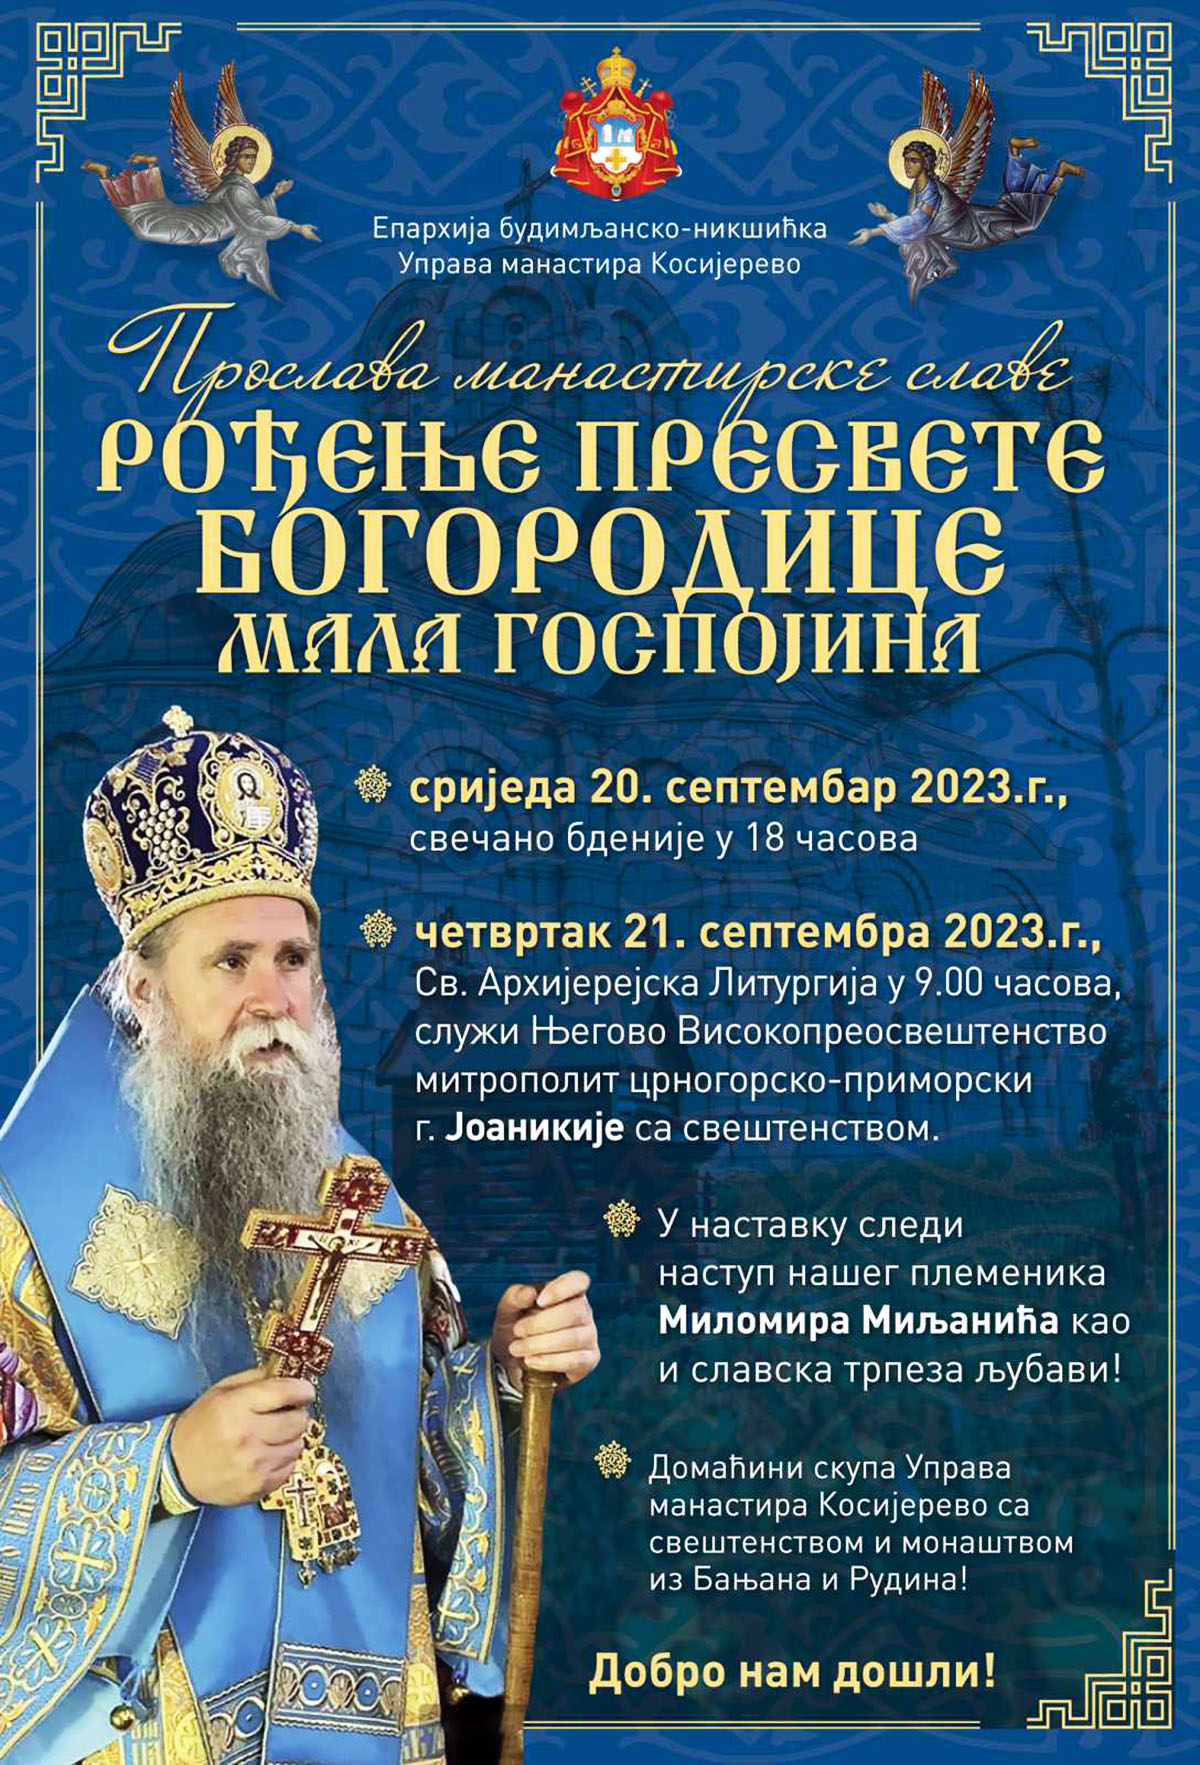 НАЈАВА: Прослава манастирск славе у Косијереву